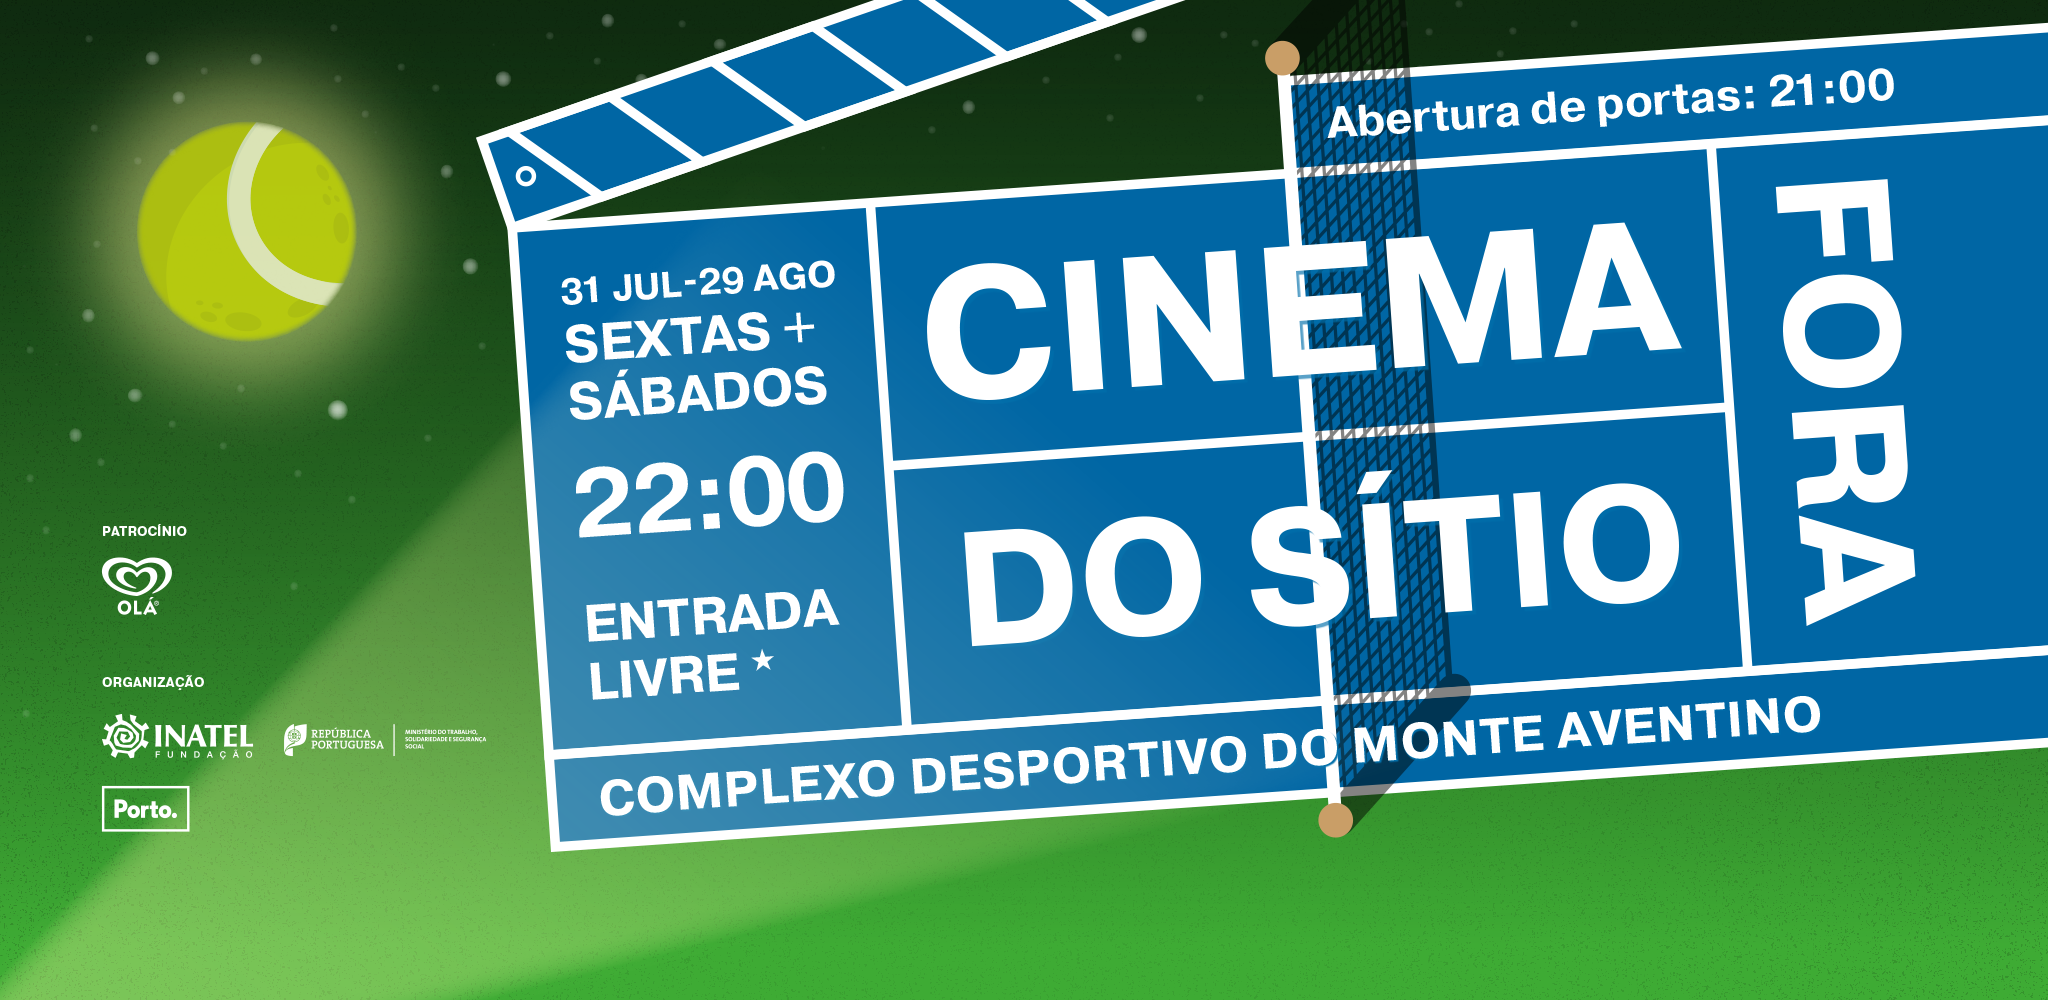 Cinema Fora do Sítio - The Night Clerk - Event